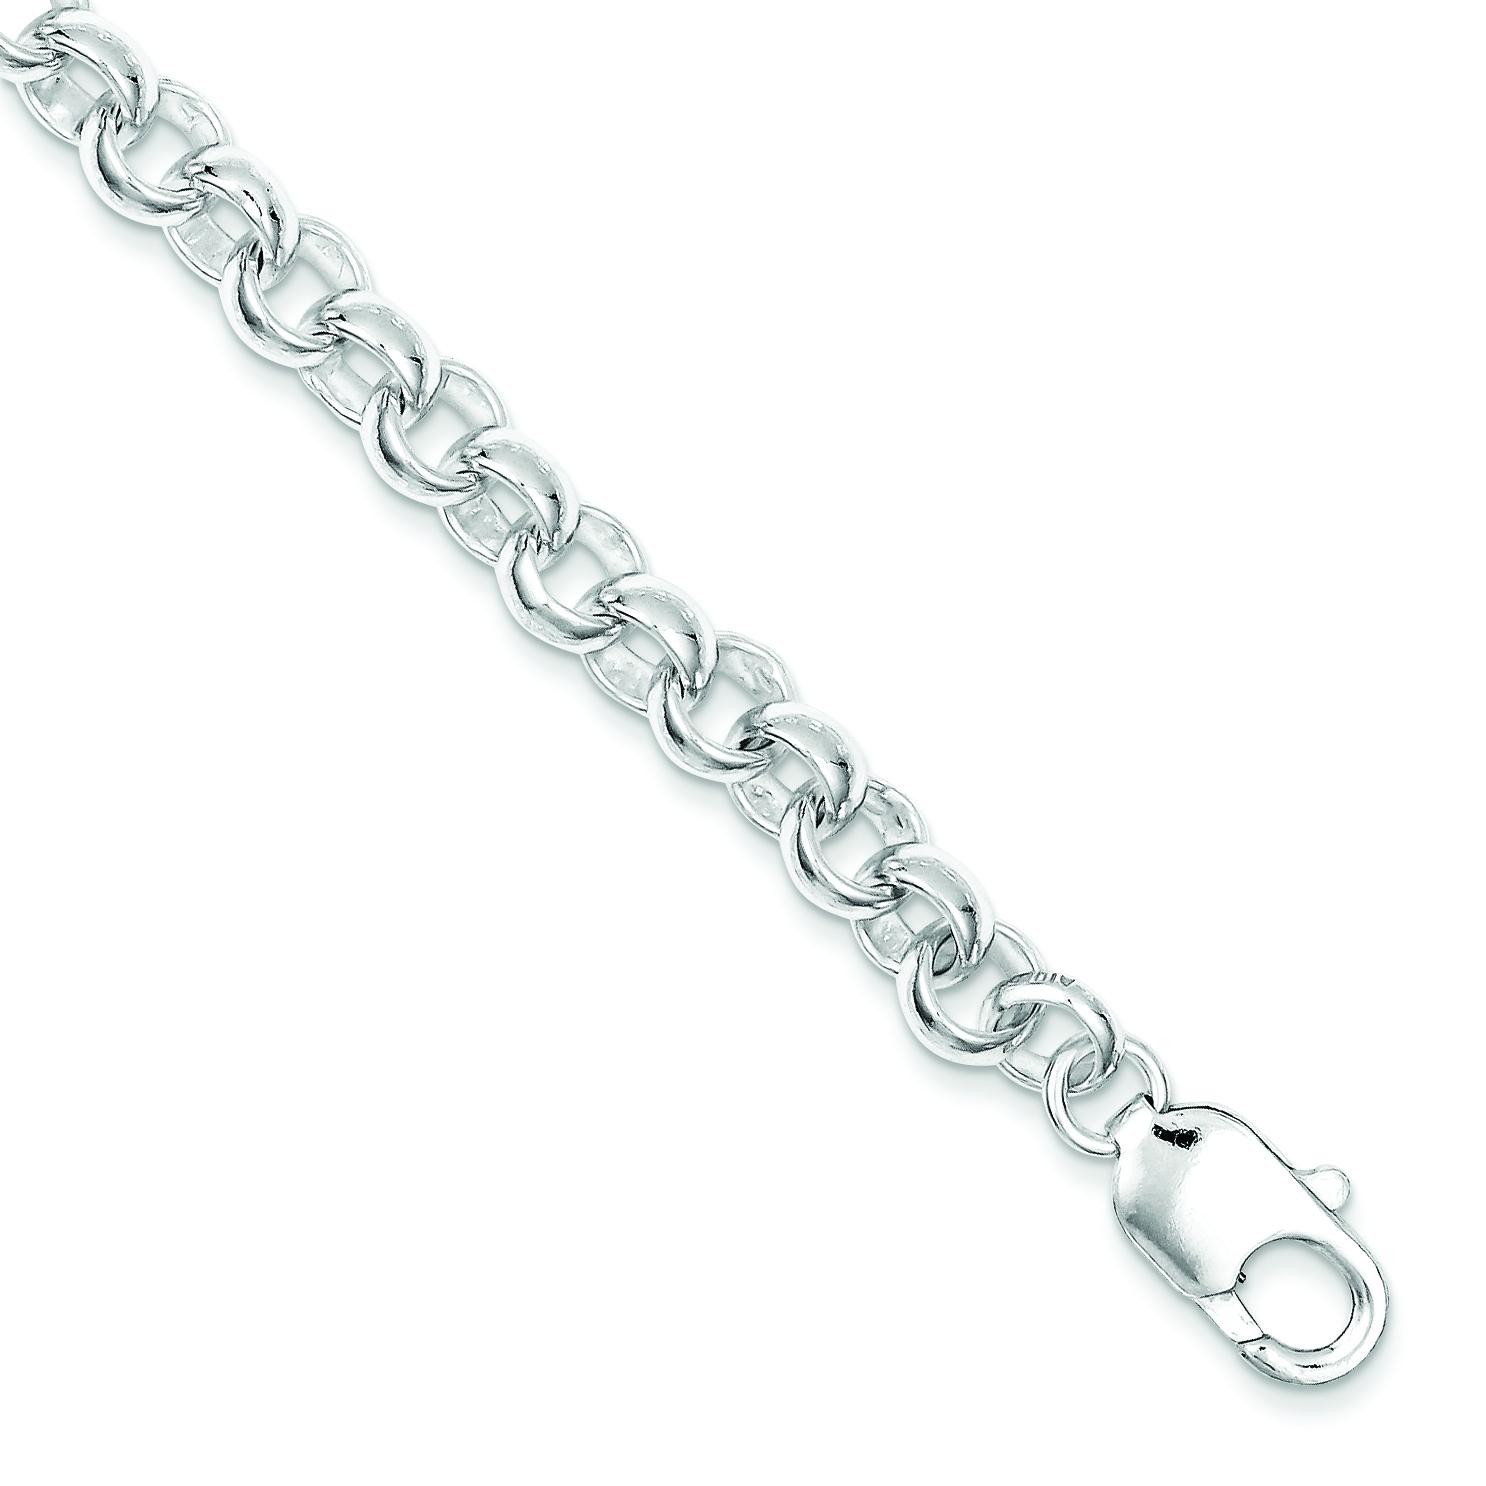 8.5inch Link Bracelet in Sterling Silver